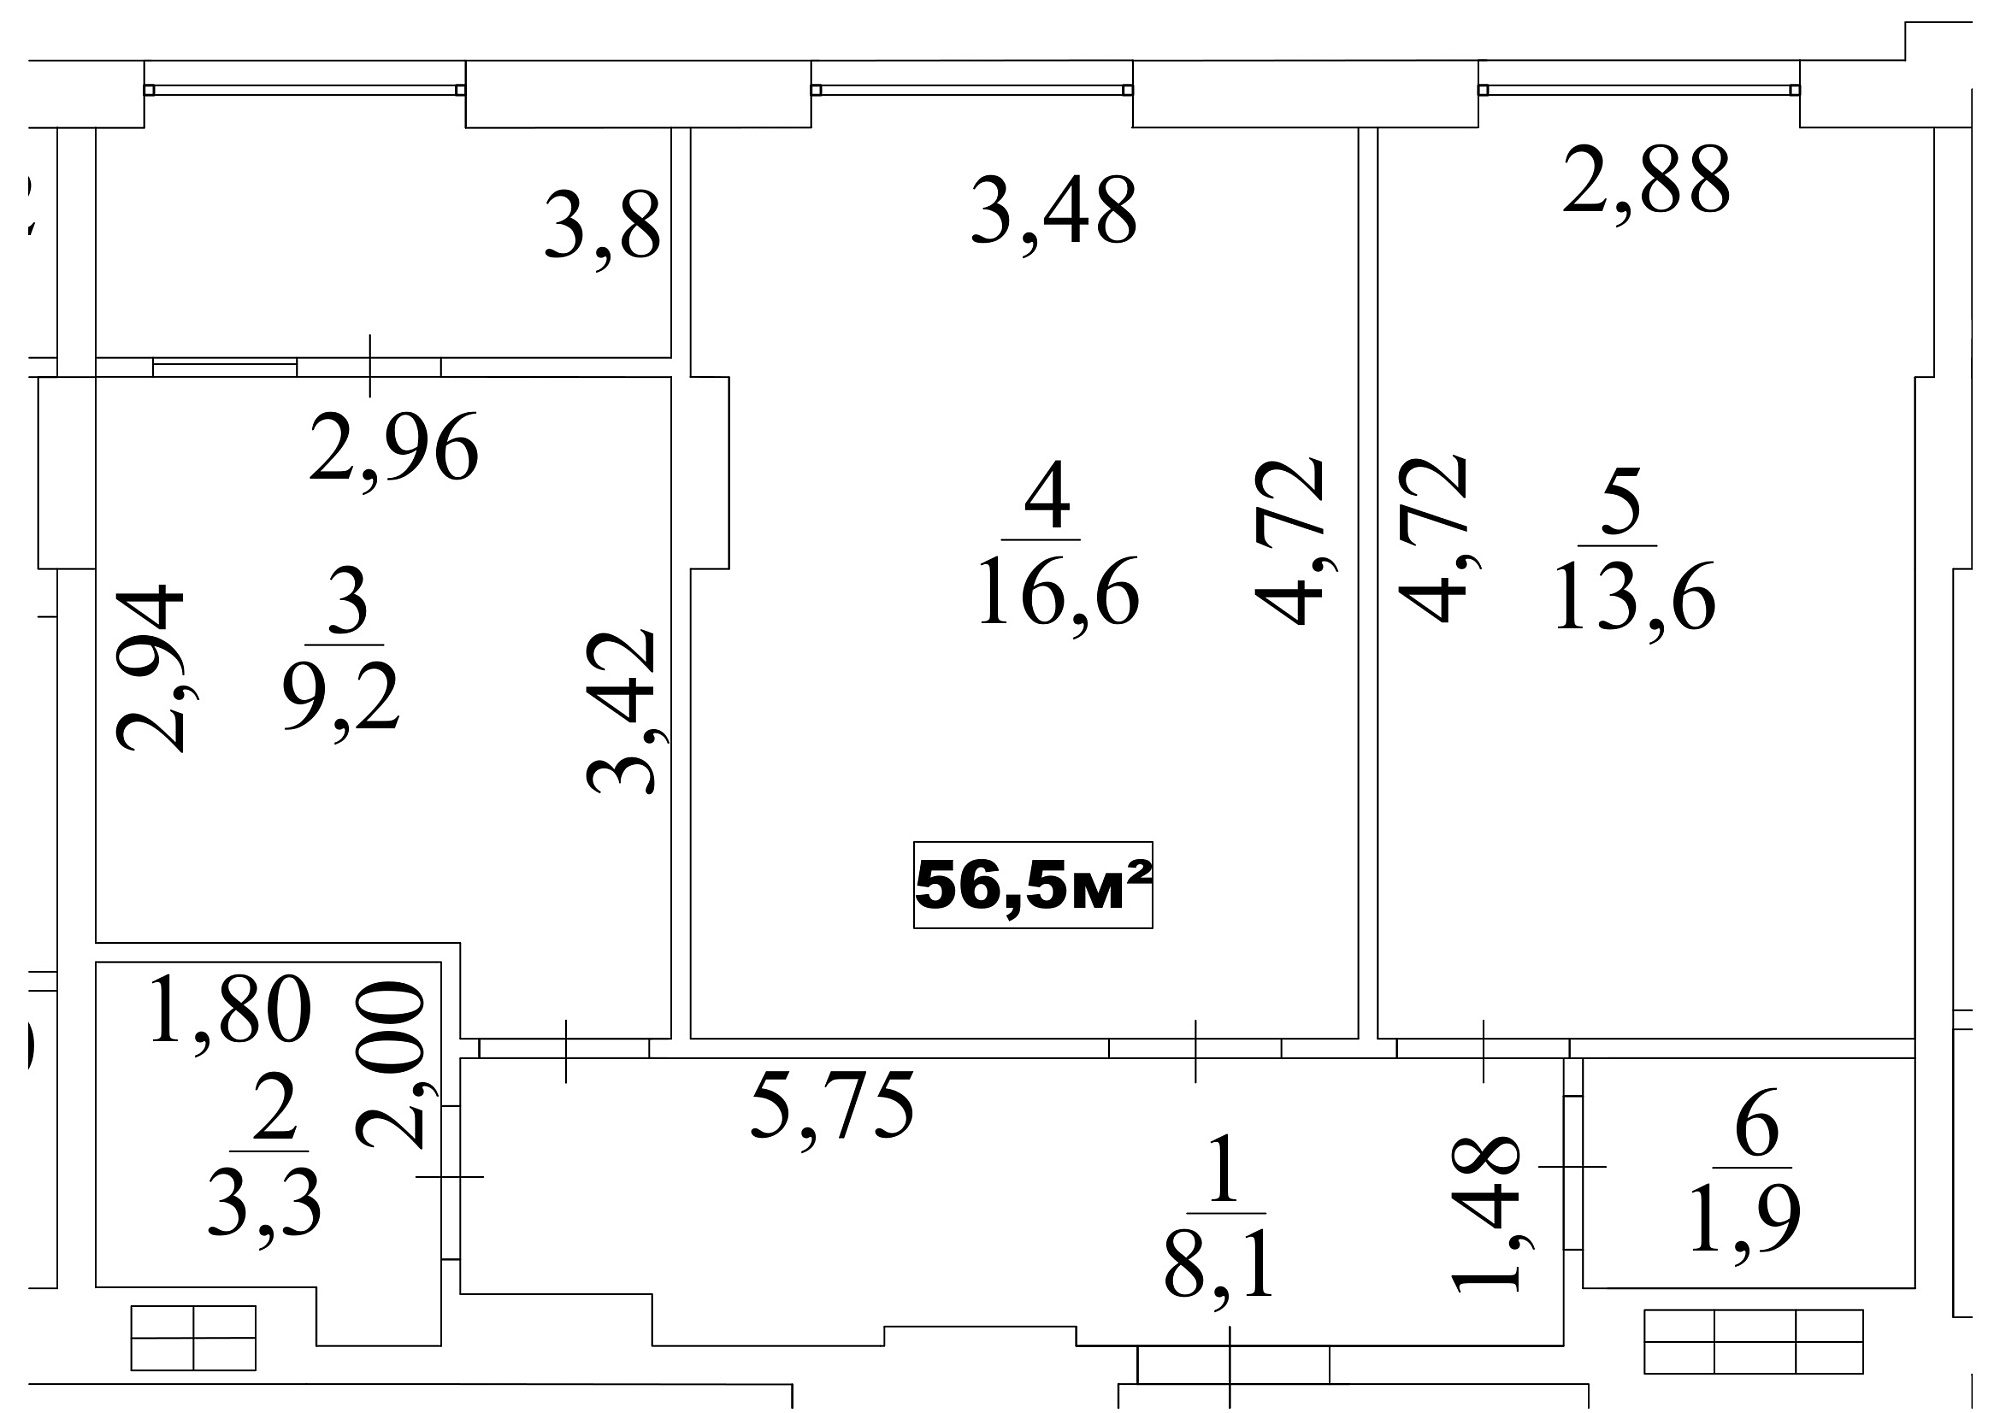 Планировка 2-к квартира площей 56.5м2, AB-10-01/00004.